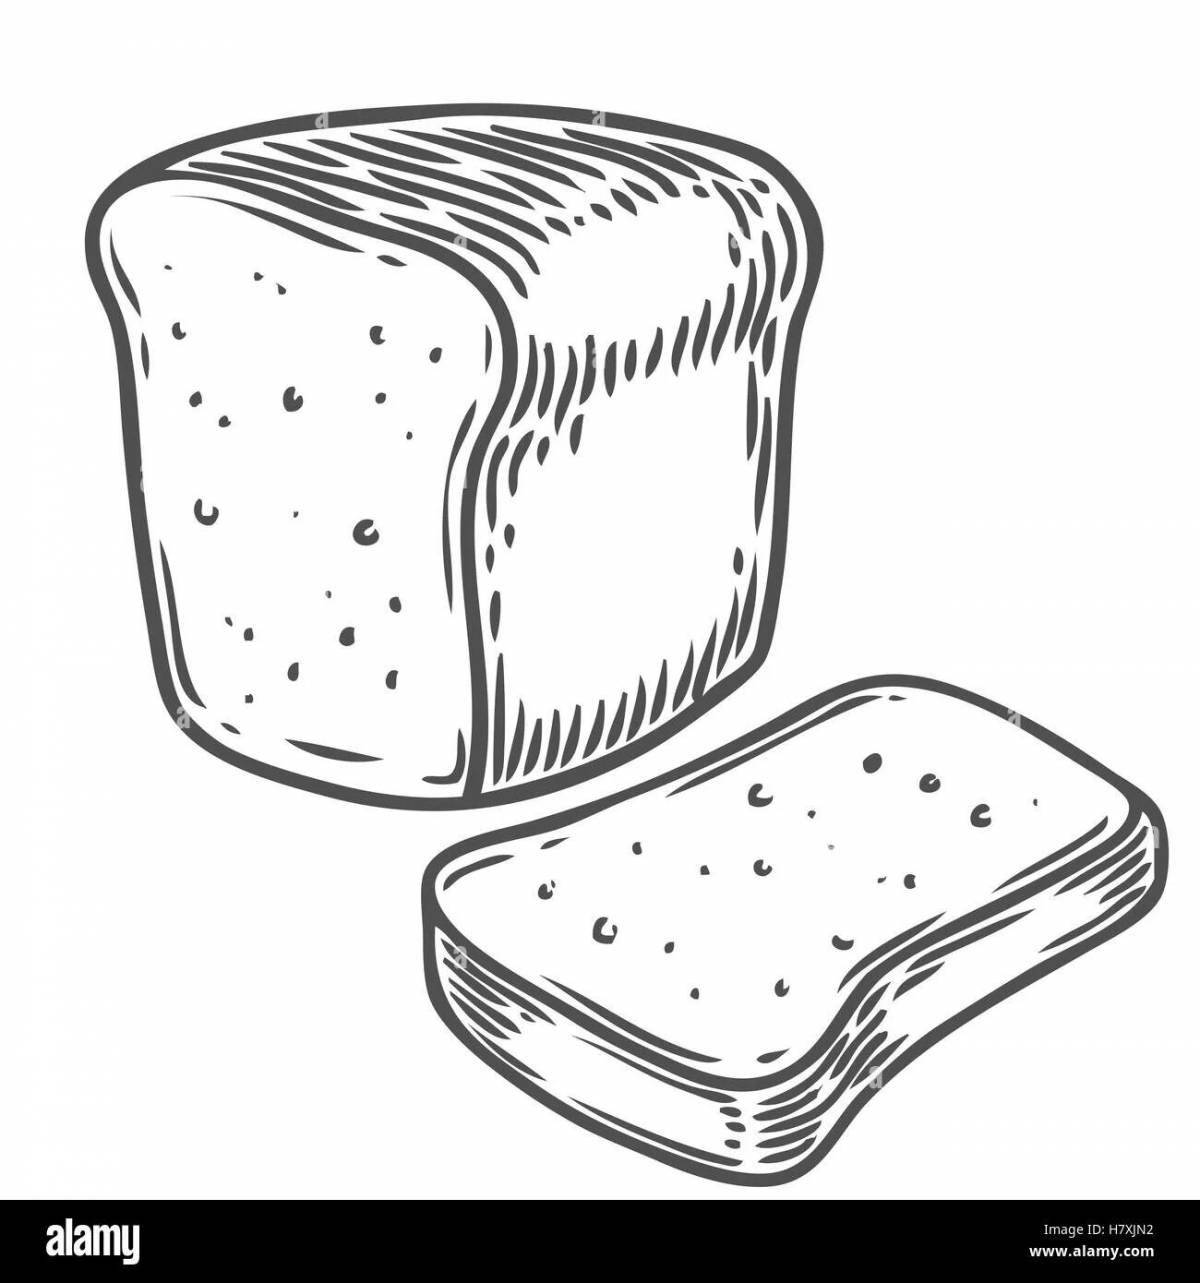 Масляная раскраска кусок хлеба